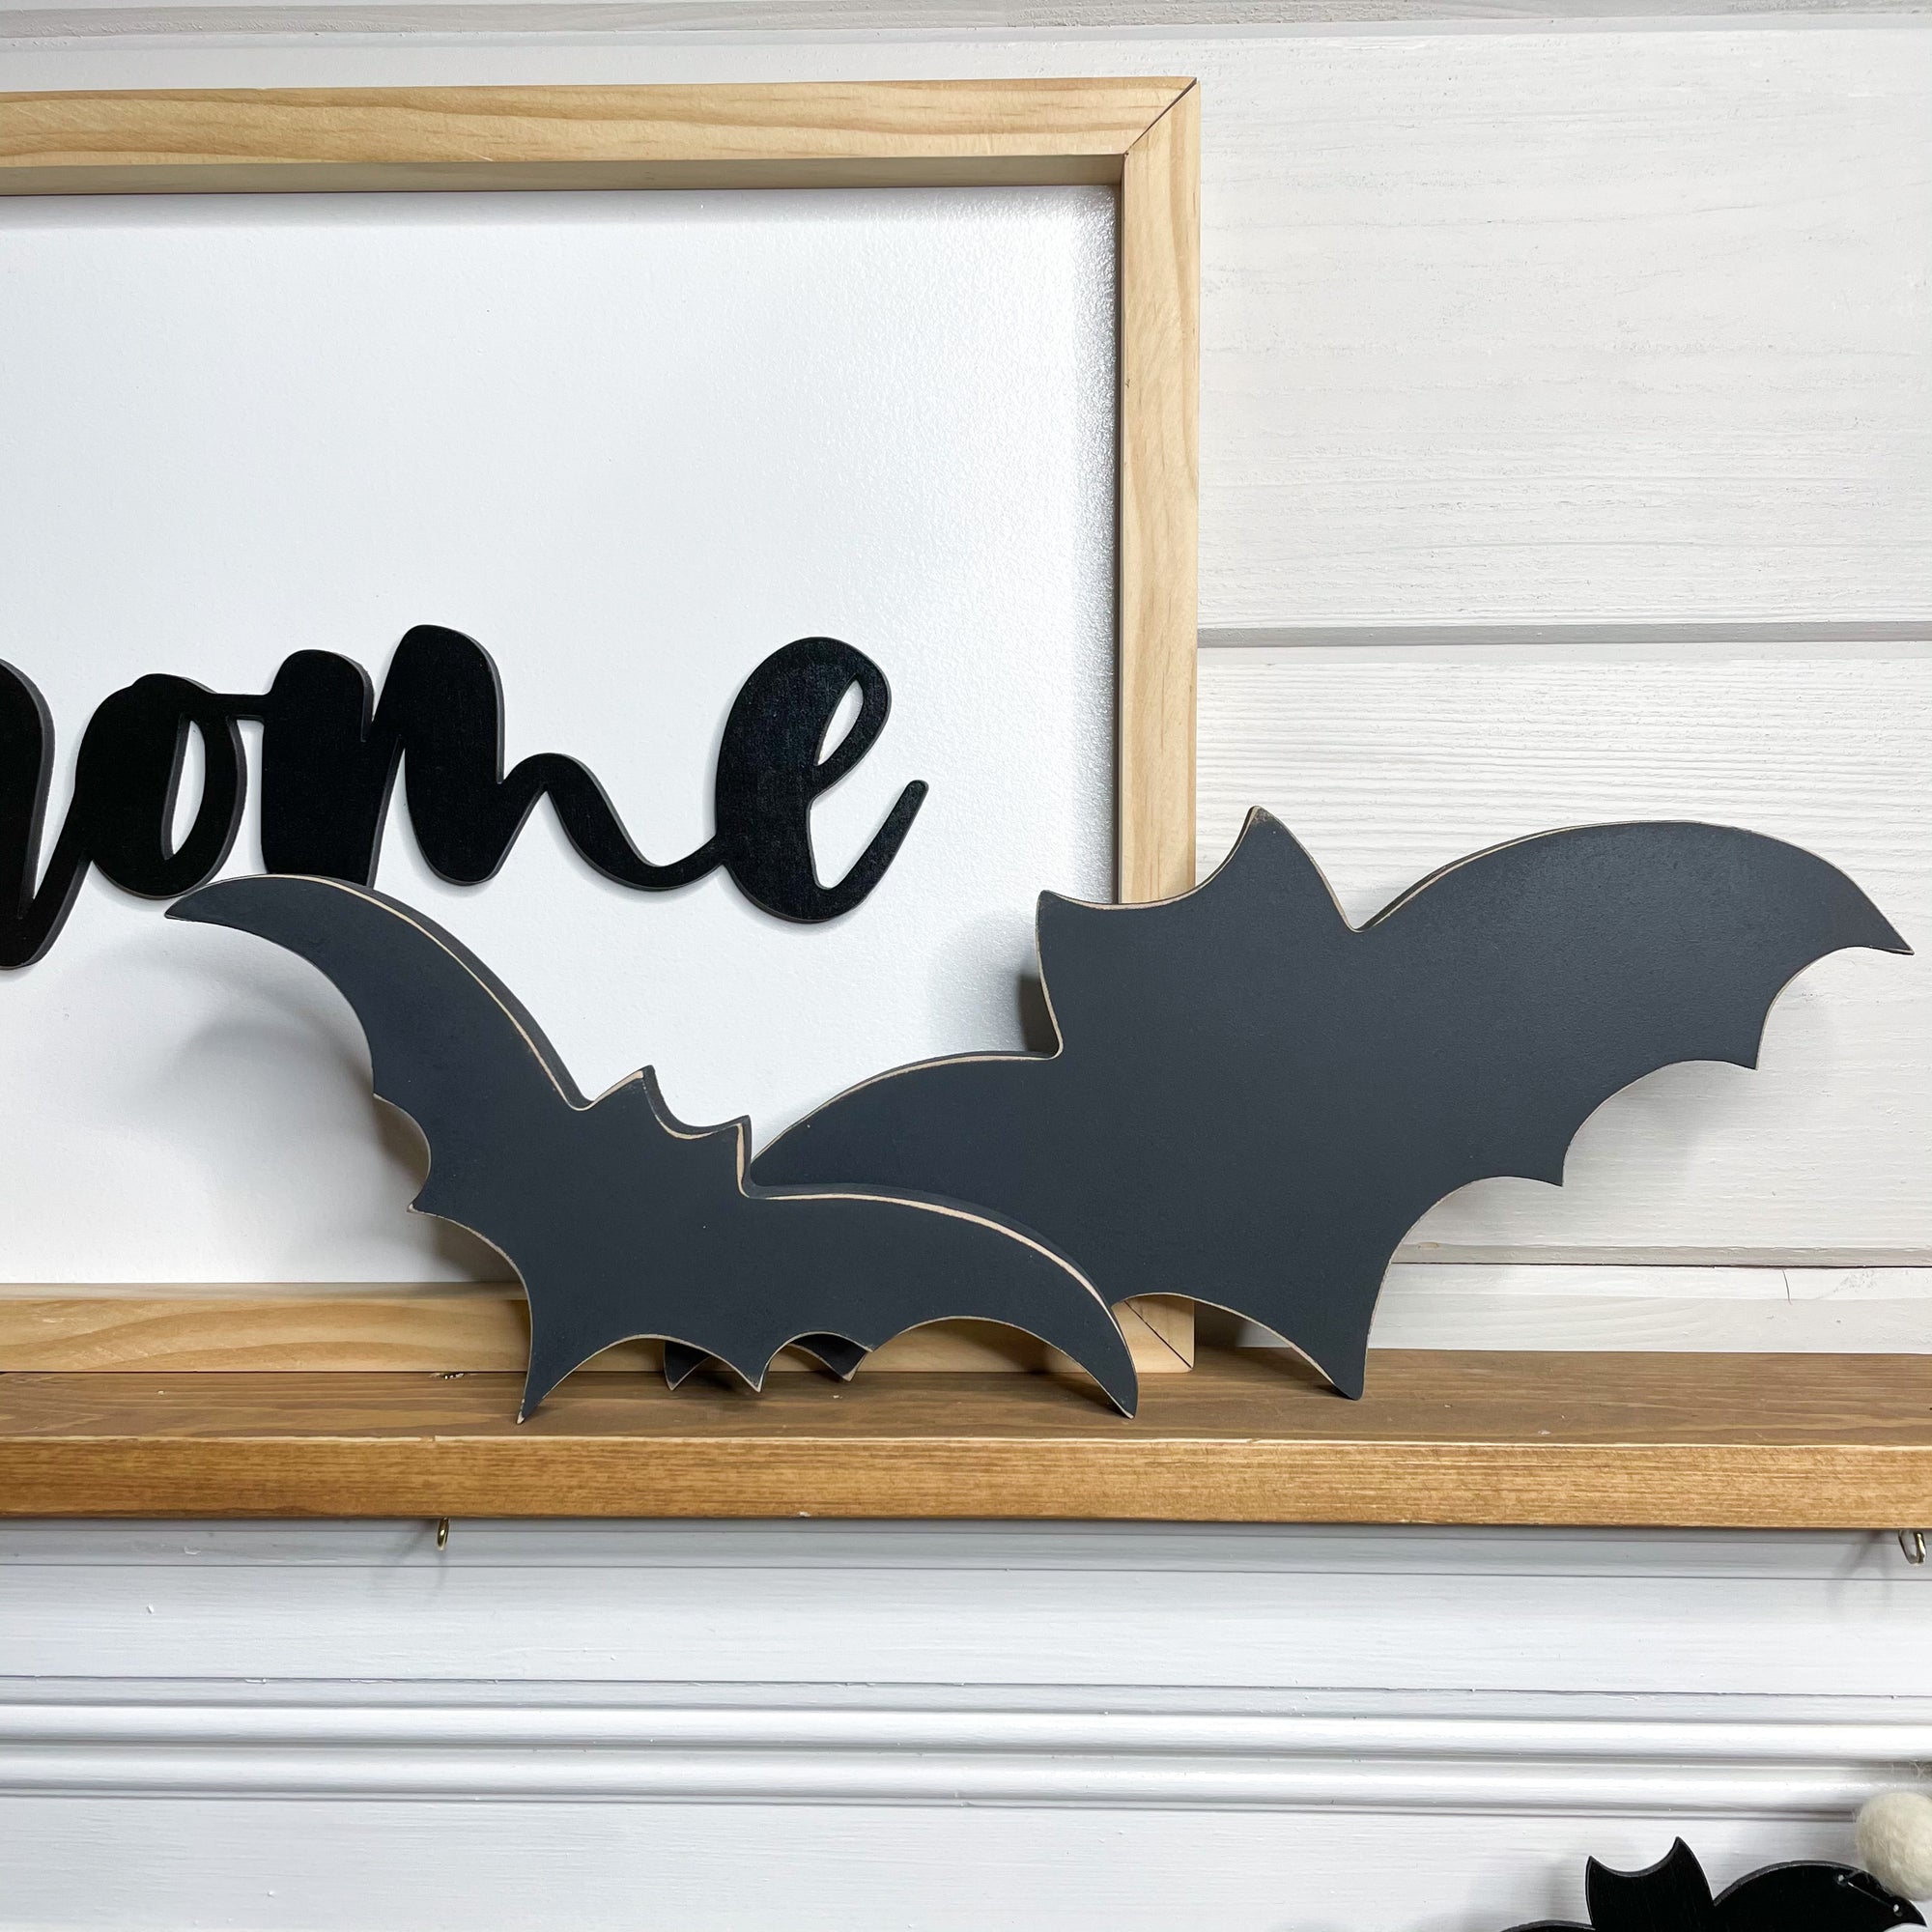 Black Bat- Freestanding- Halloween, Fall decor; 8”, 10”, 12”